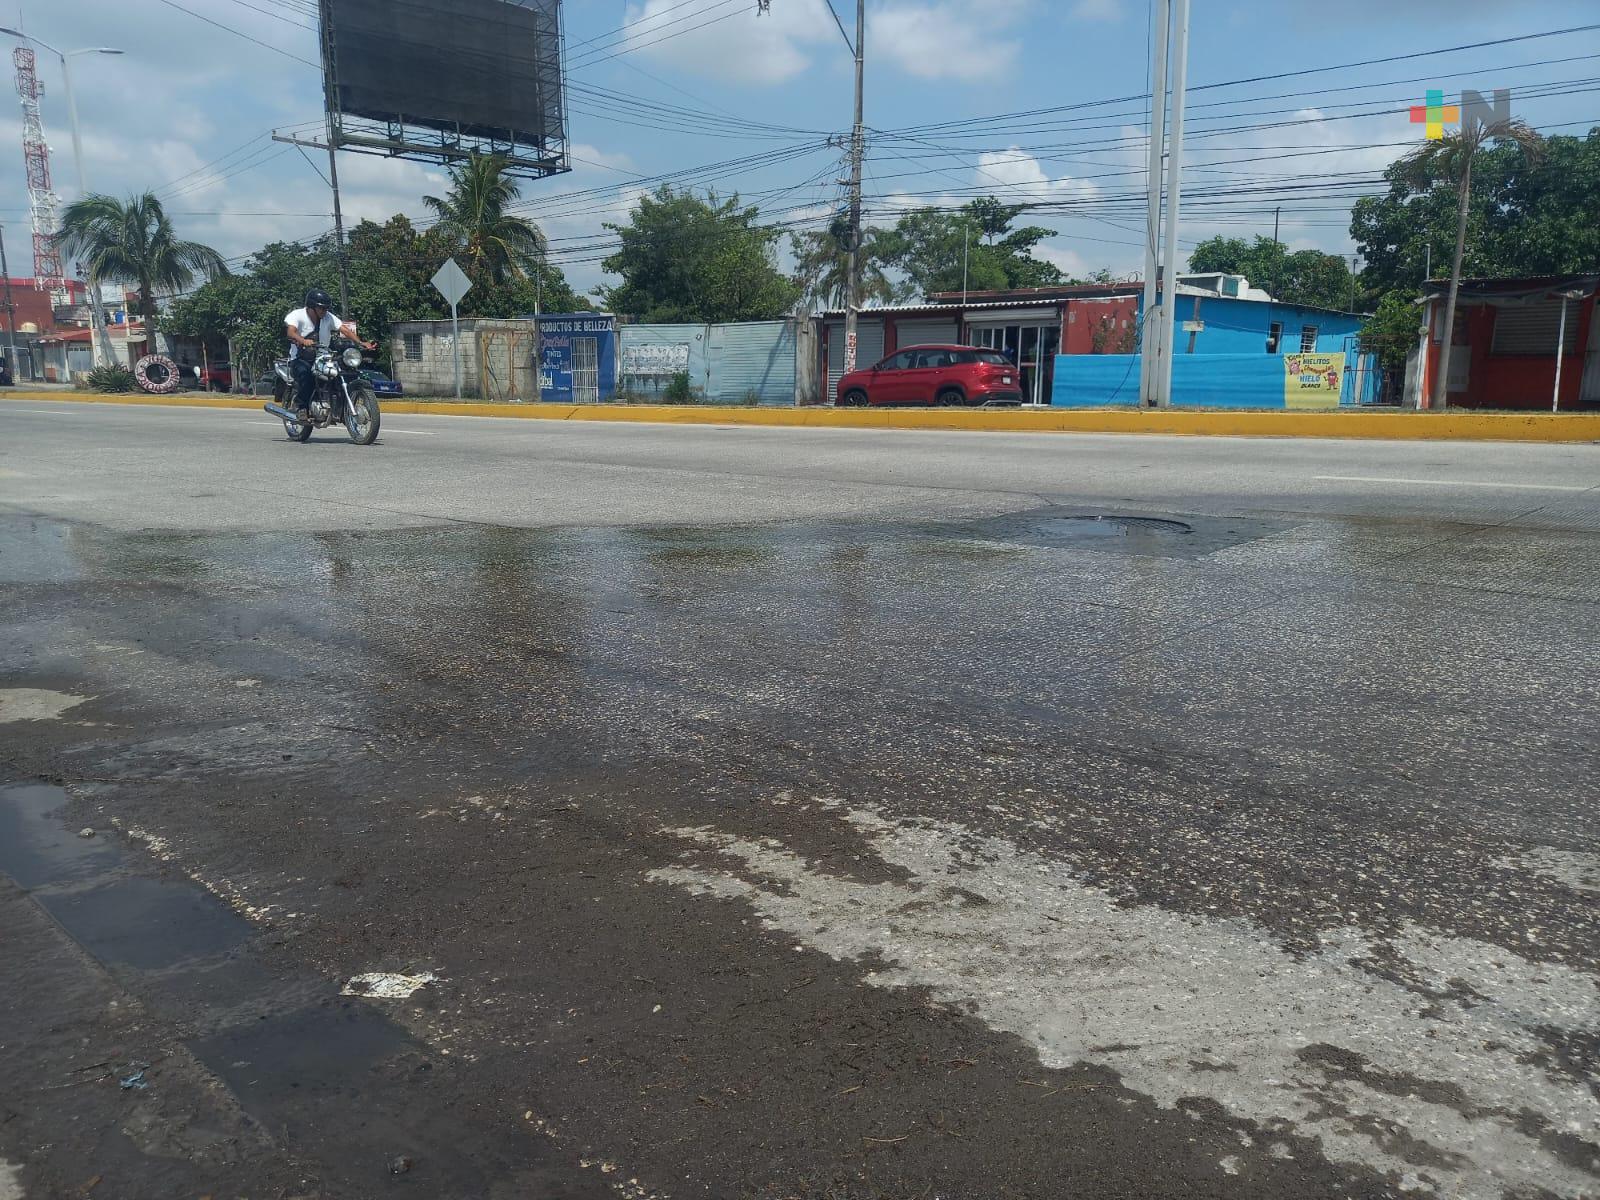 Tres semanas tiene fuga de aguas negras en avenida J. B. Lobos de Veracruz puerto